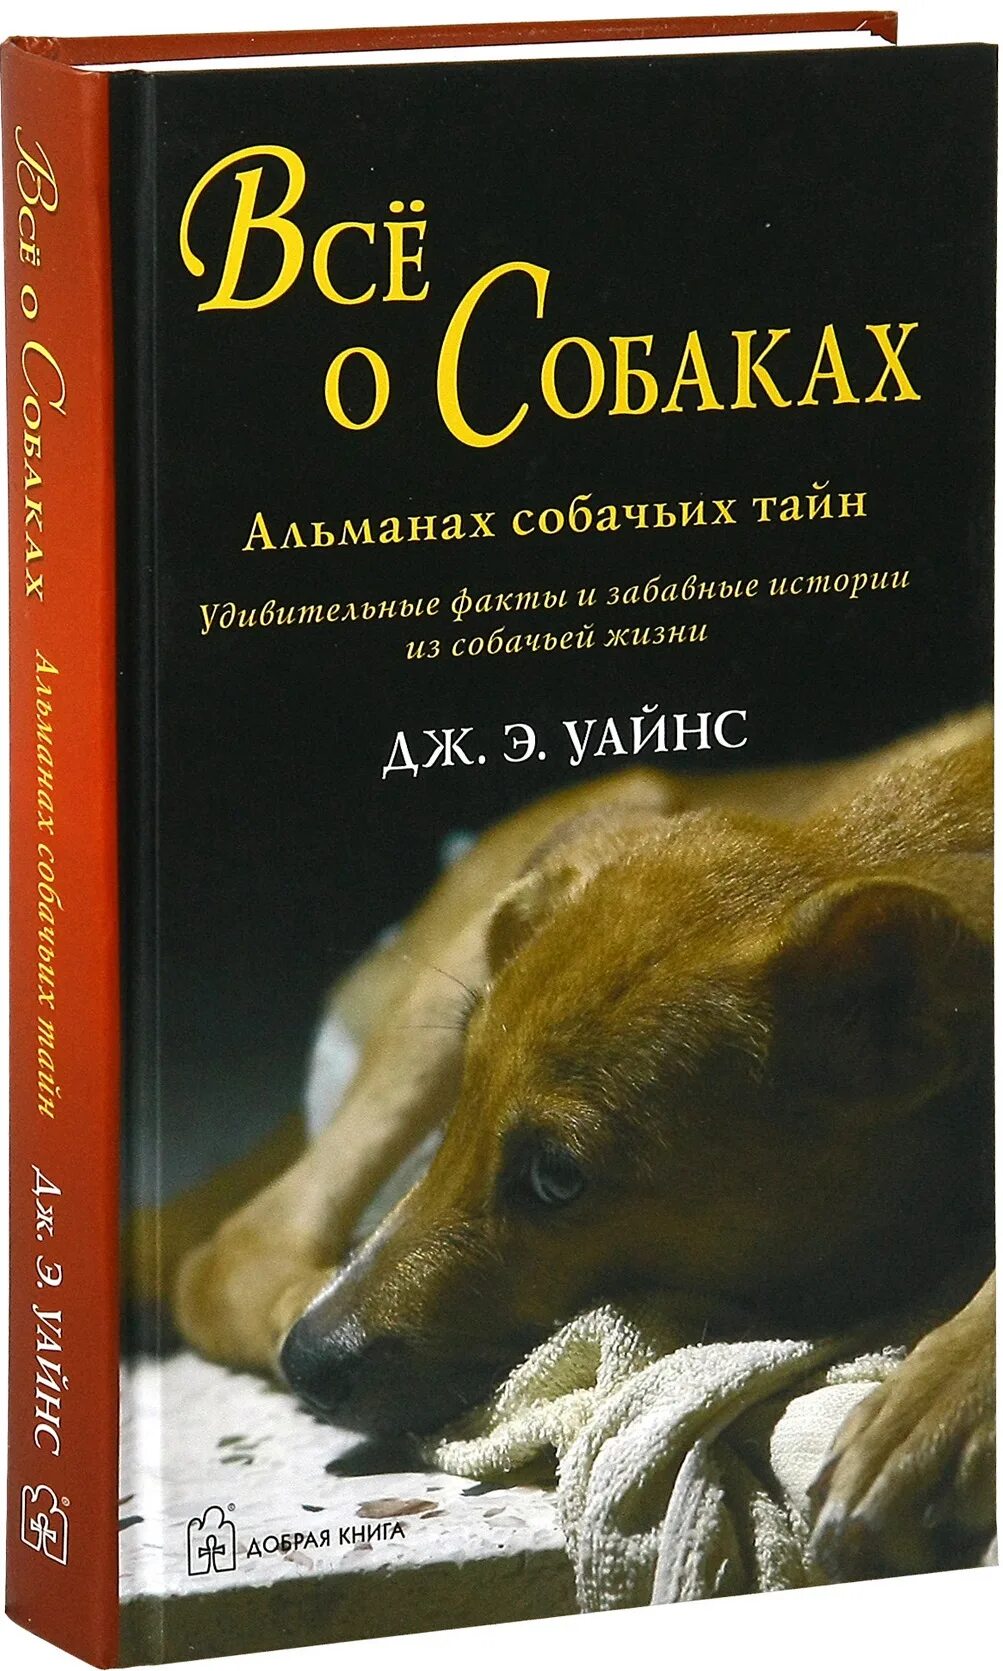 Жизнь собаки книга. Книги про собак. Интересные книги про собак. Книги о собаках Художественные. Все о собаках книга.